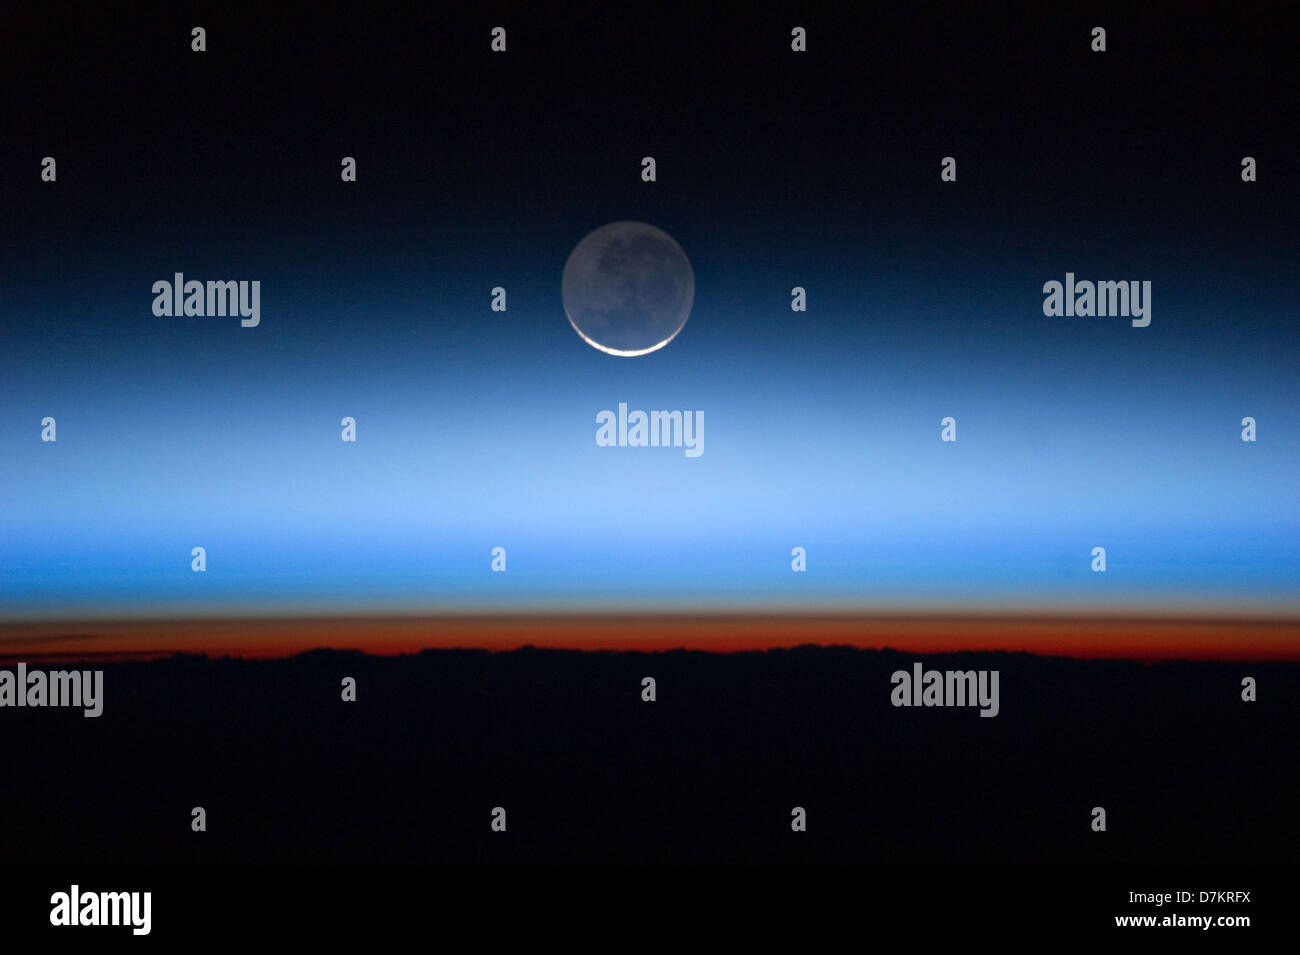 Mond mit den Leib der Erde im unteren Übergang in der orangefarbenen Troposphäre, die unterste und dichteste Teil der Atmosphäre der Erde. Die Troposphäre endet abrupt an der Tropopause, die als die scharfe Grenze zwischen Orange und blau gefärbten Atmosphäre im Bild erscheint. Die silbrig-blauen Nachtwolken erstrecken sich weit über die Erde Troposphäre. Stockfoto